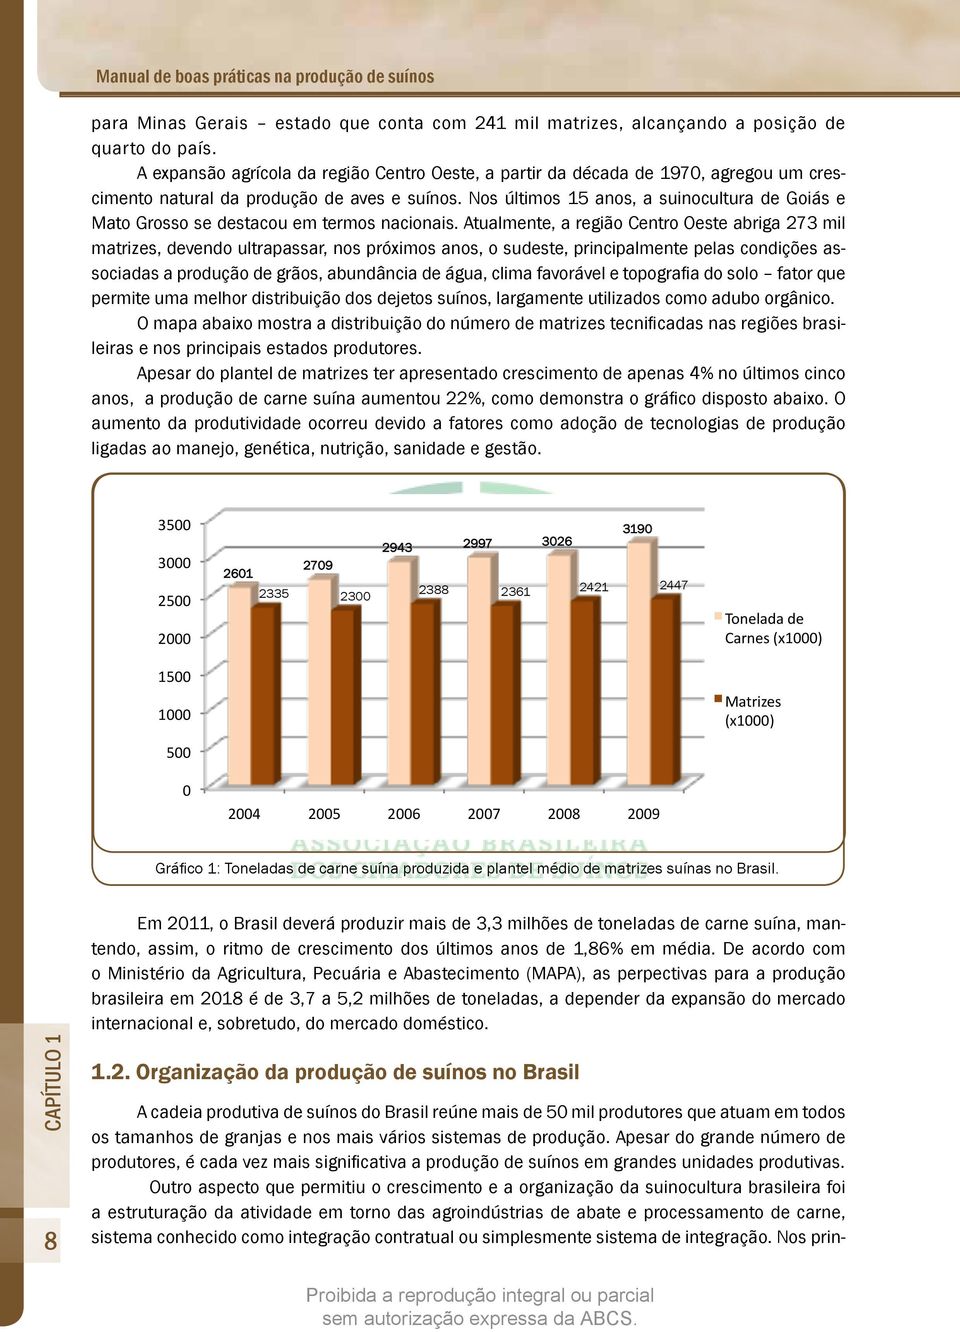 Nos últimos 15 anos, a suinocultura de Goiás e Mato Grosso se destacou em termos nacionais.